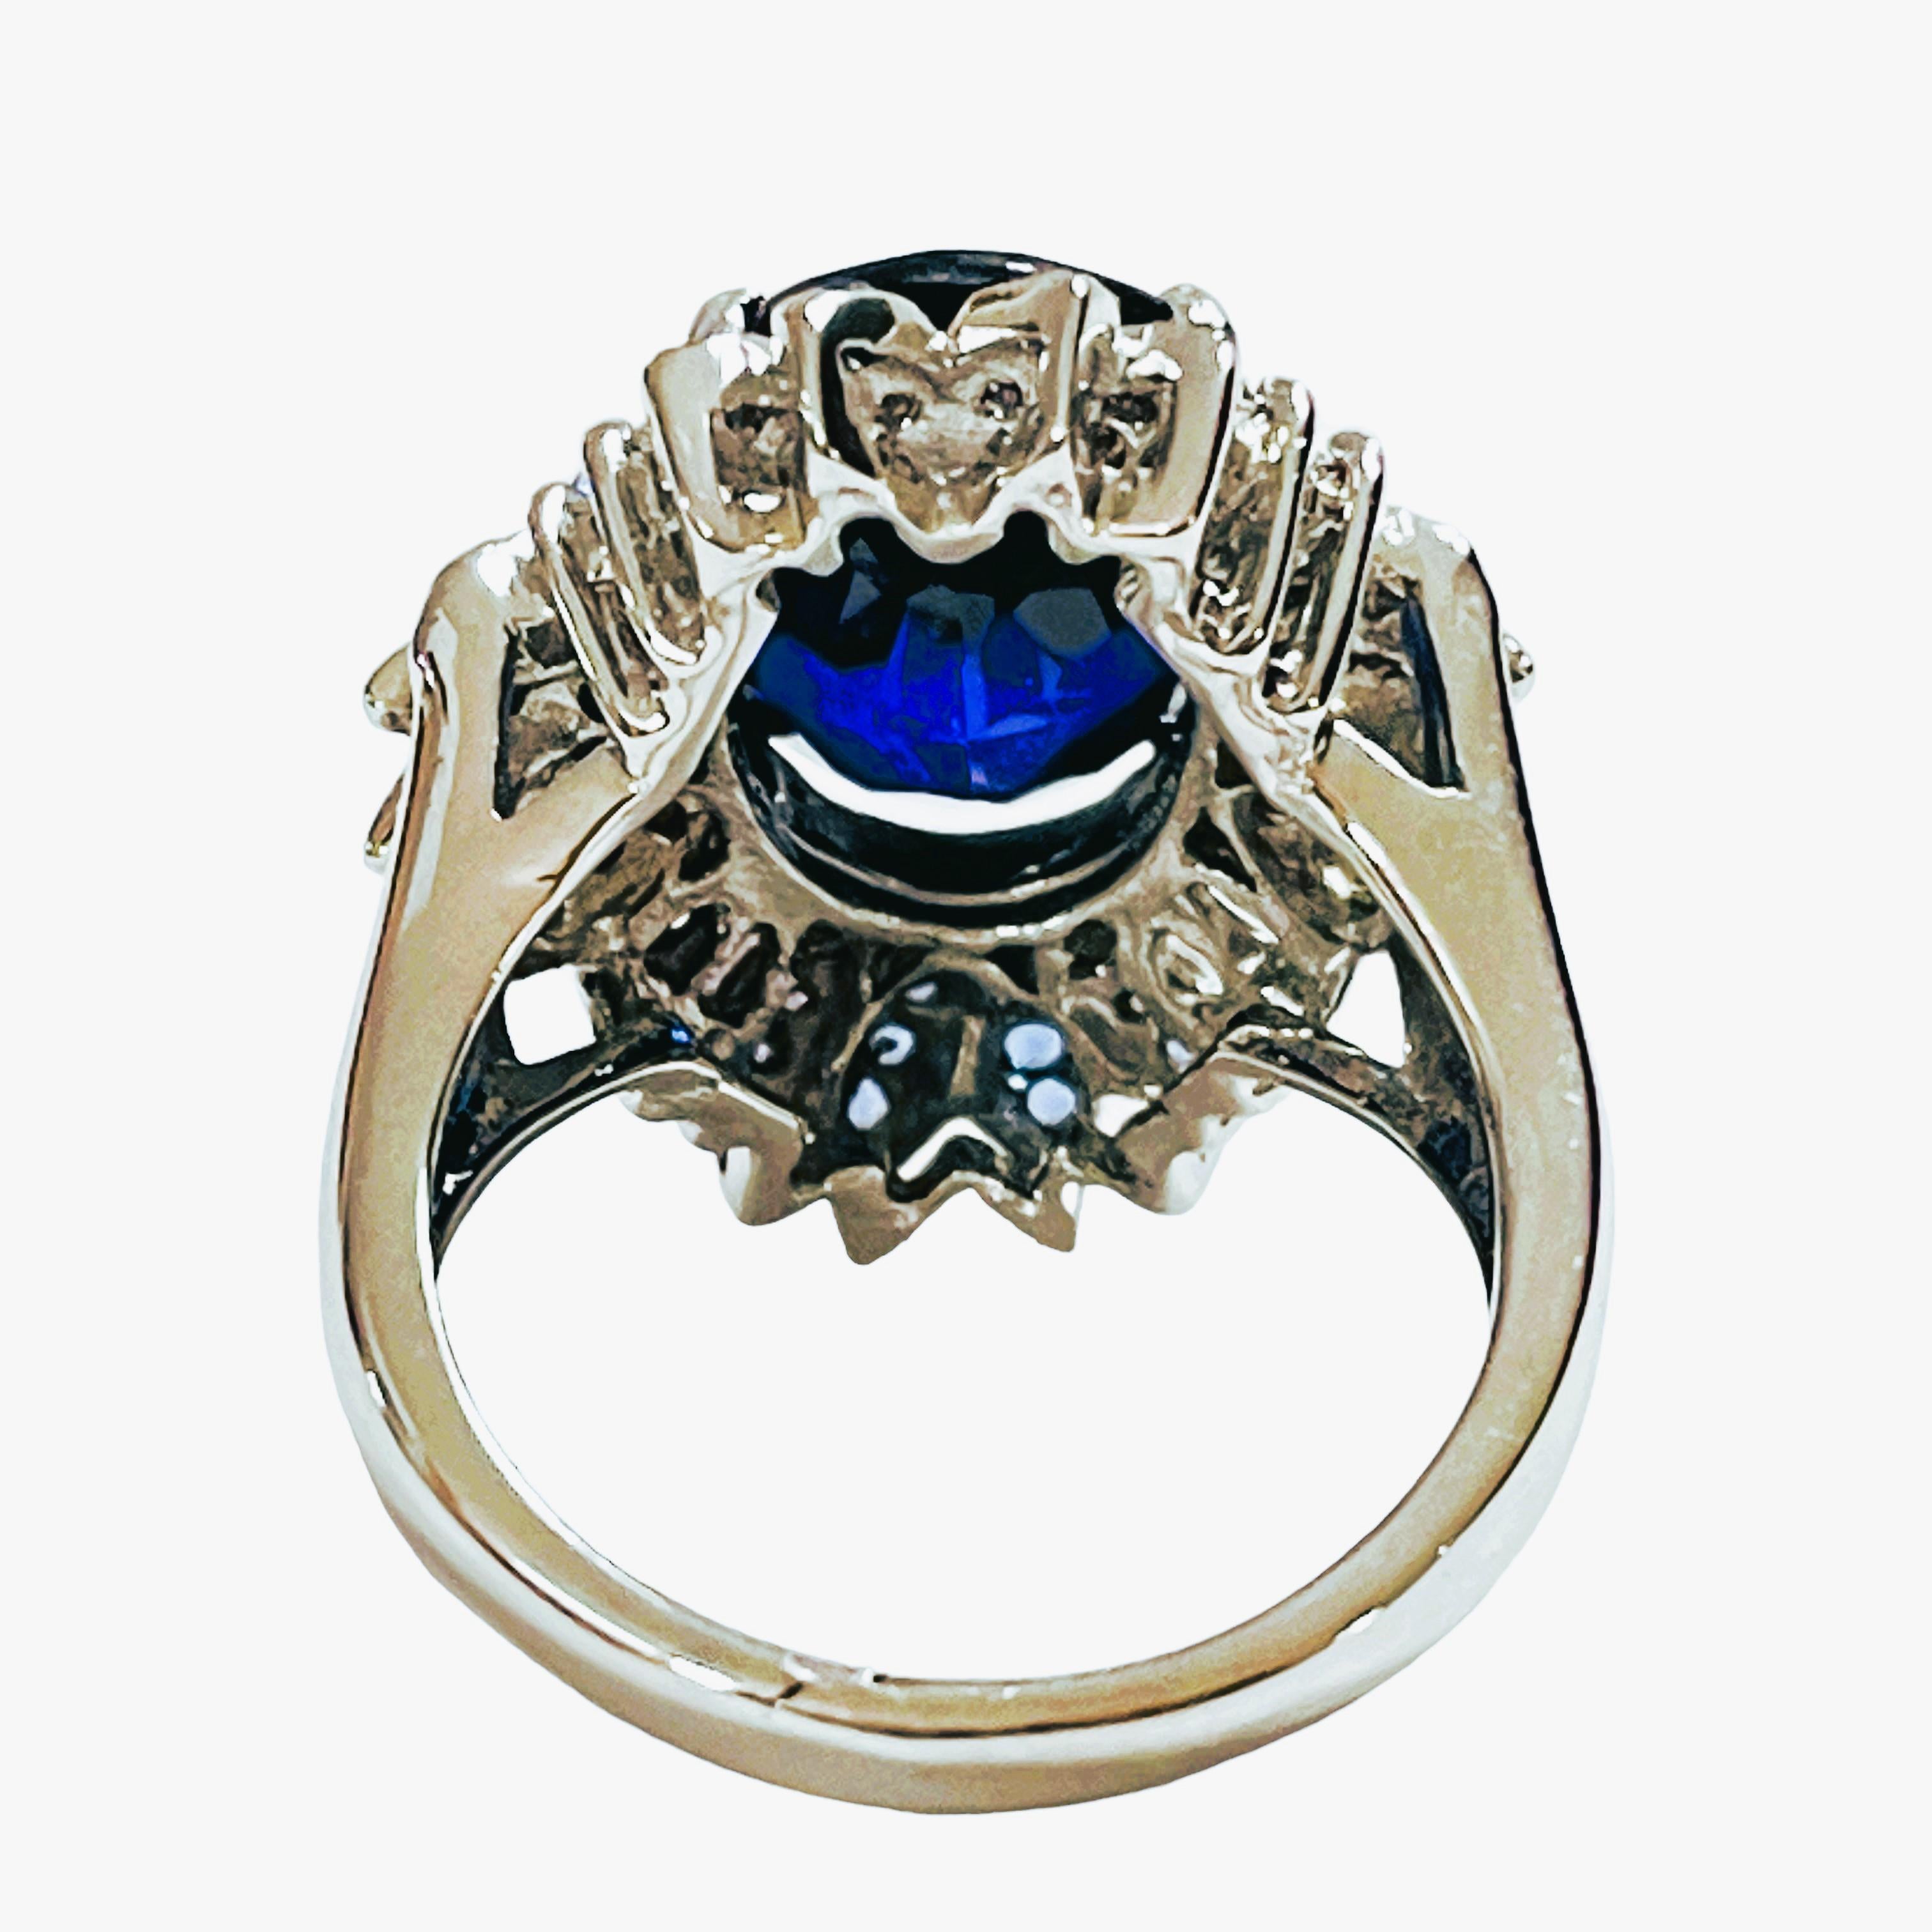 Taille ovale Bague en argent sterling avec saphirs bleus du Cachemire, bleus royaux et blancs neufs IF 9 carats